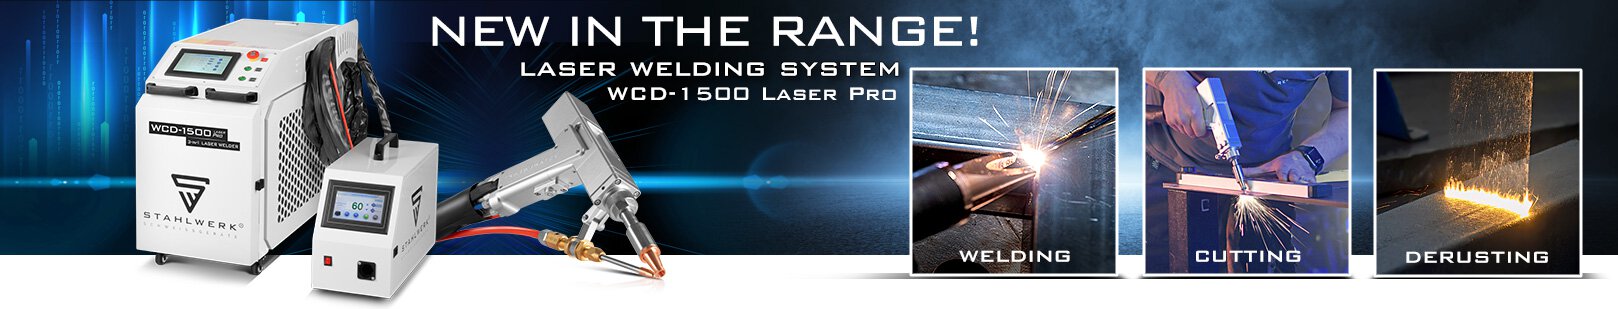 Utrustning för lasersvetsning